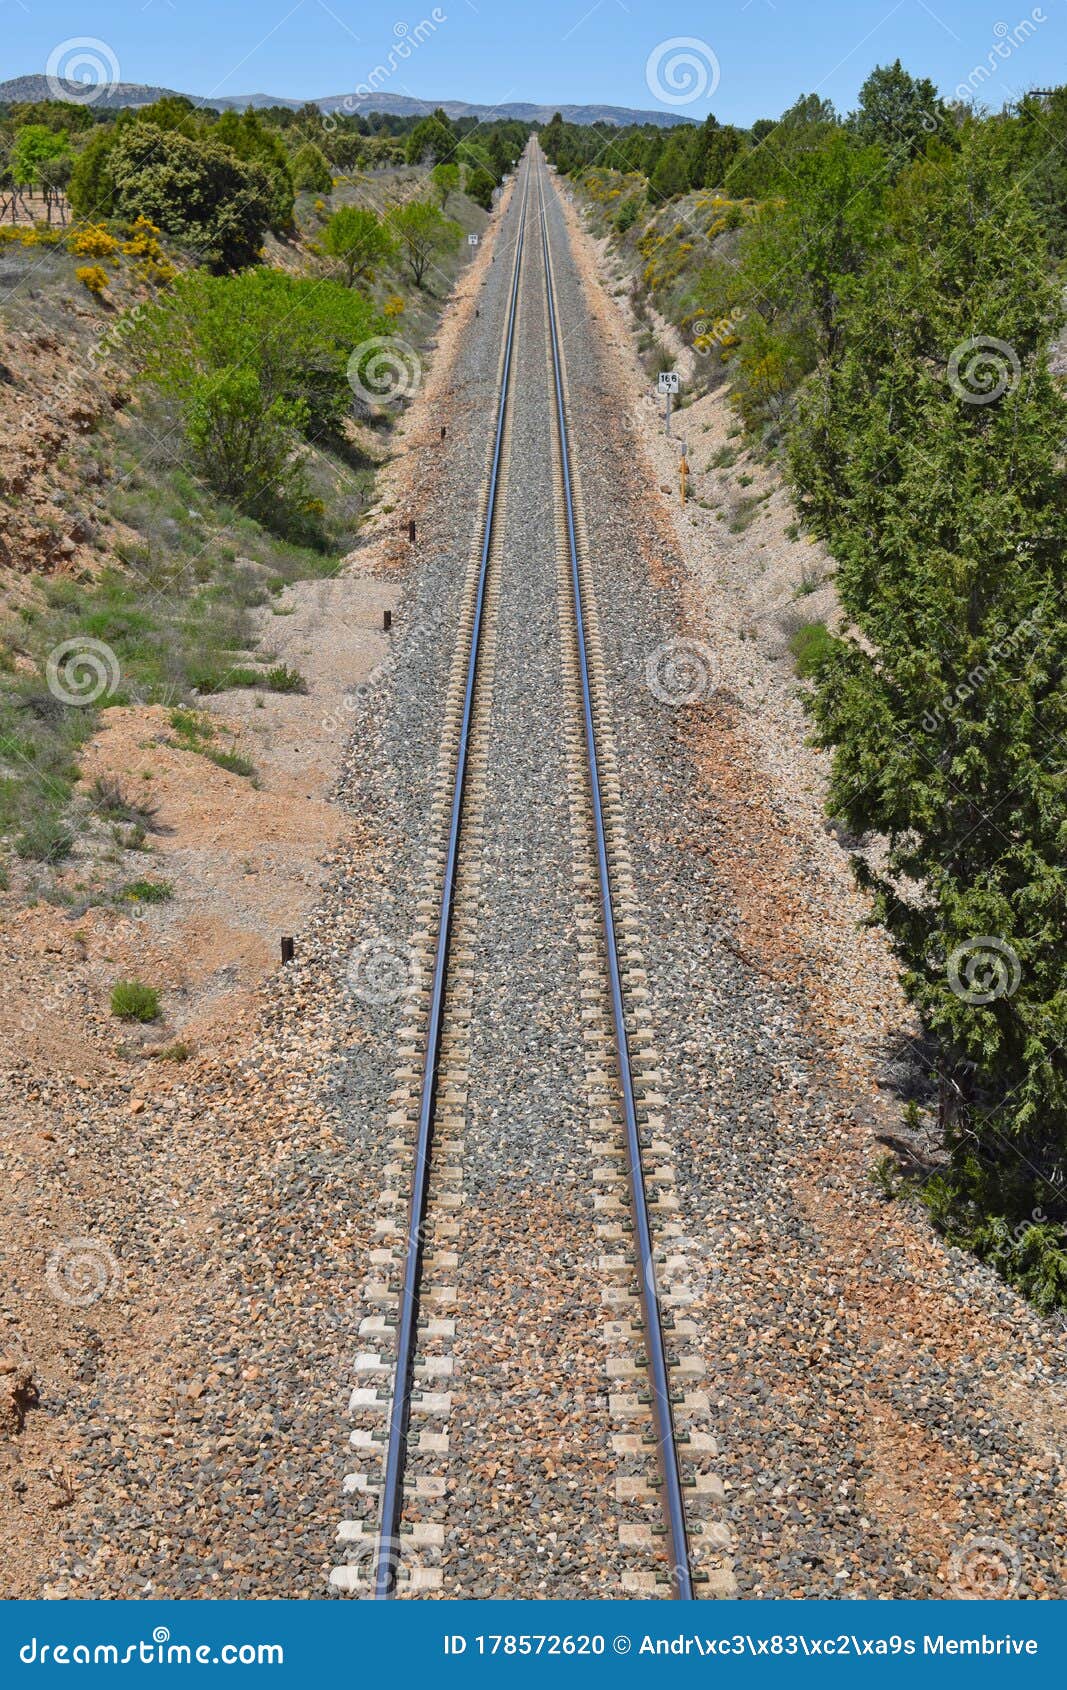 vias de tren, in the province of teruel